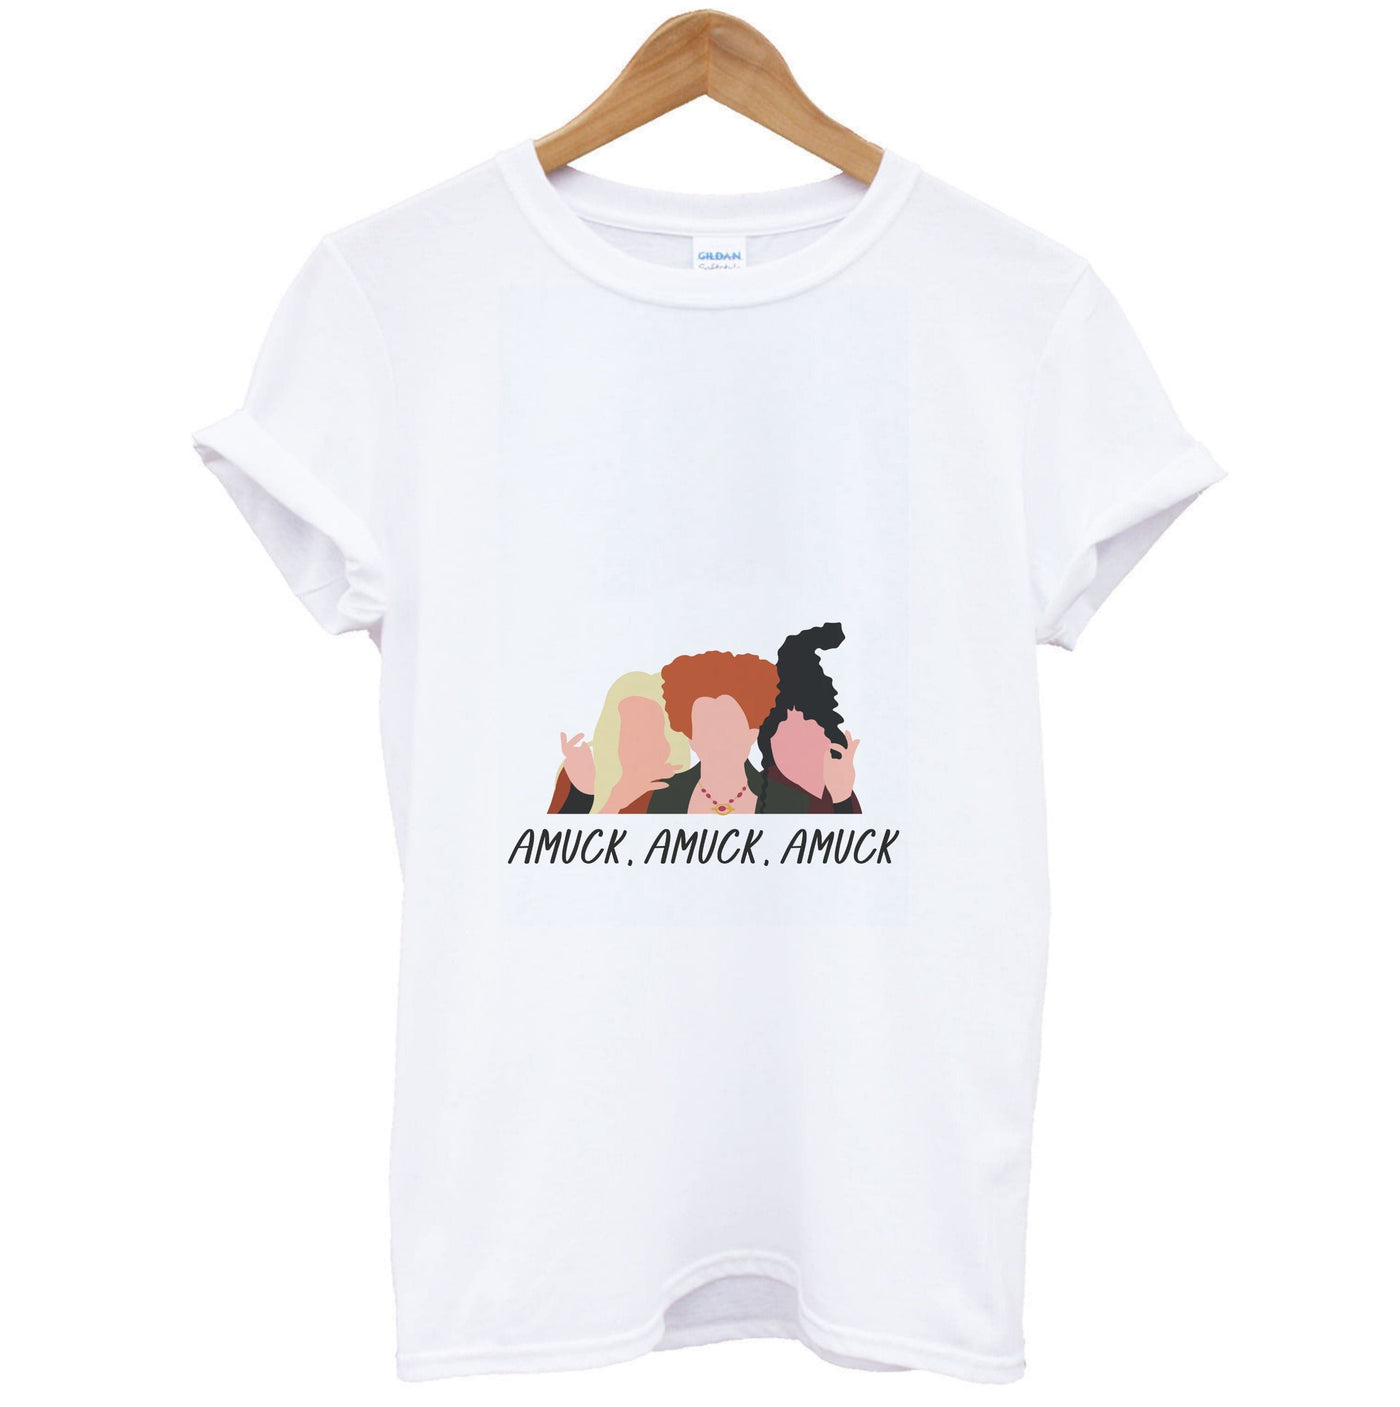 Amuck, Amuck, Amuck - Hocus Pocus T-Shirt